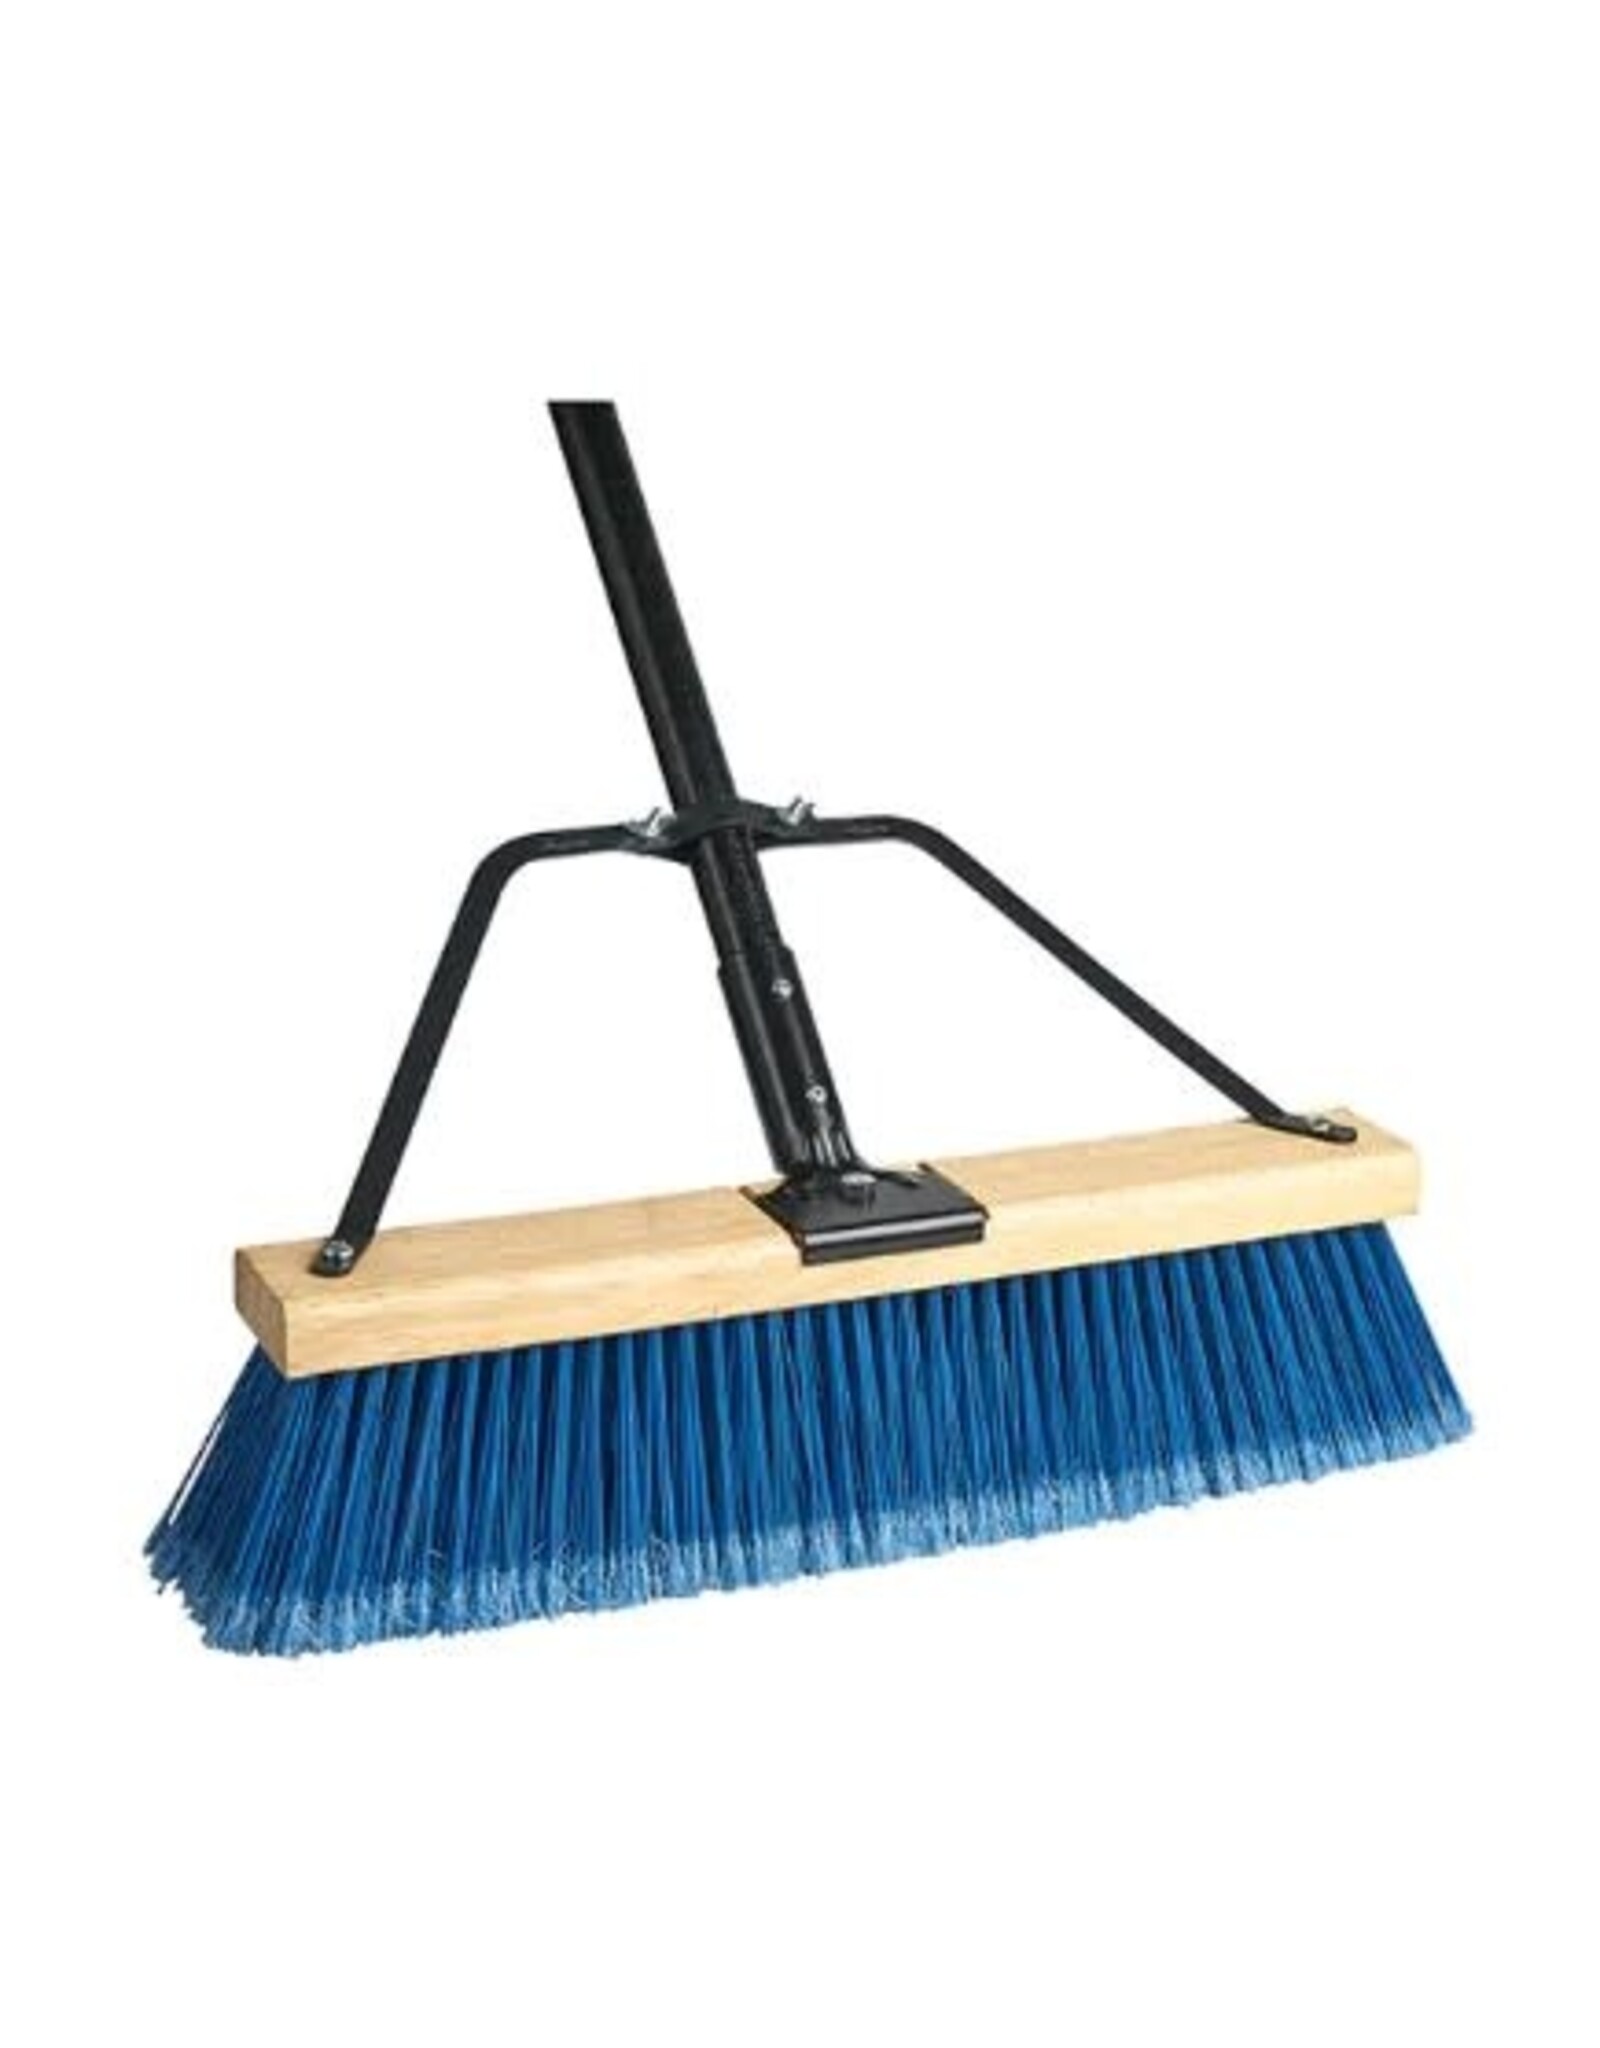 M2 Pro Ryno Push Broom, Fine/Blue, 24" w/Brace